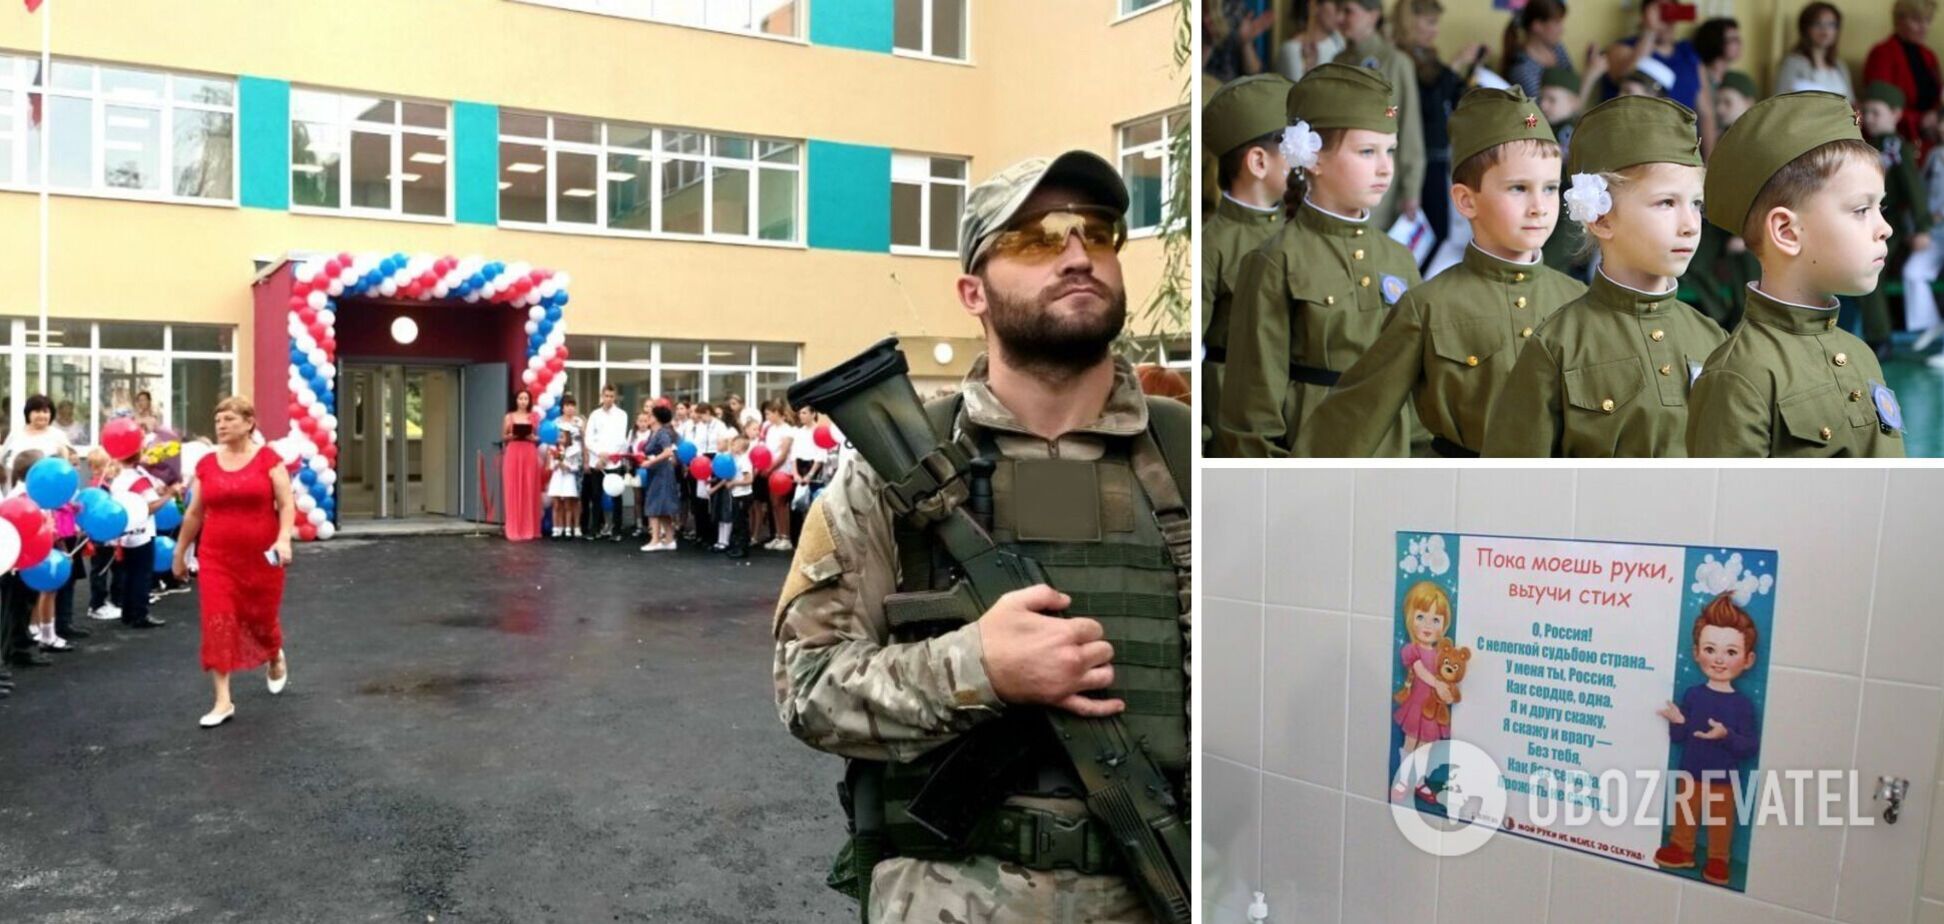 В школах оккупированной Донетчины в туалетах повесили стихи о России. Фотофакт